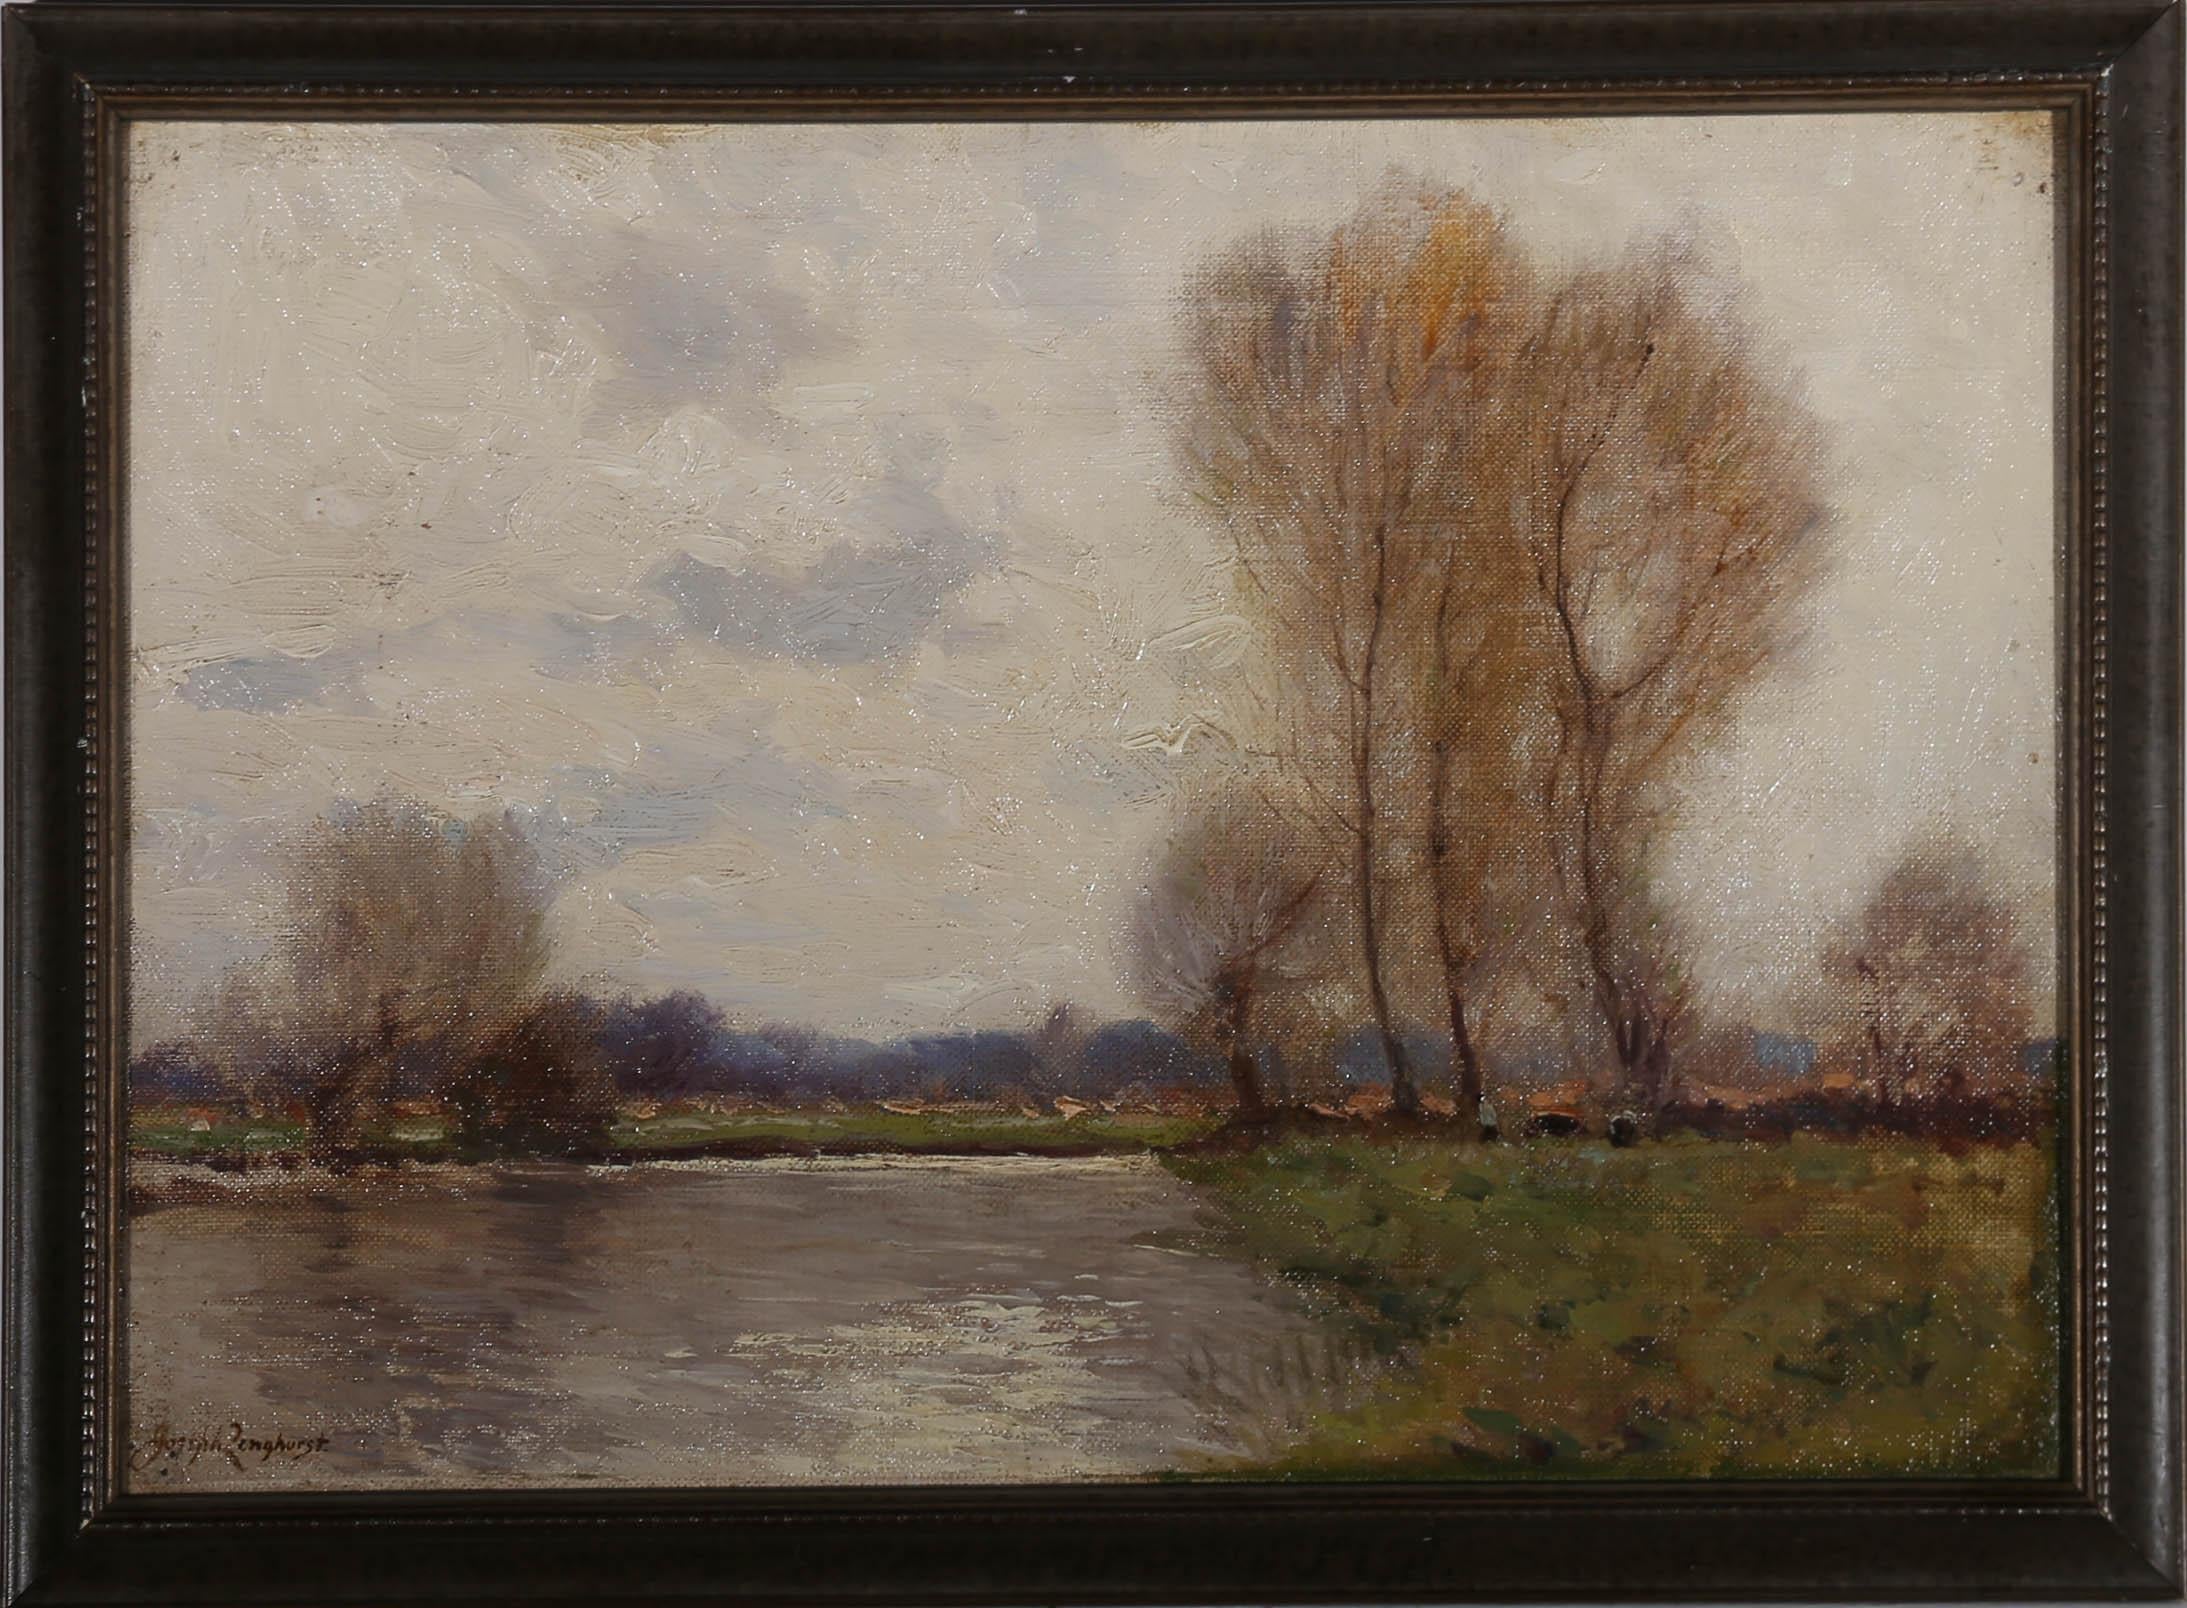 Ein attraktives impressionistisches Gemälde des britischen Künstlers Joseph Longhurst (1874-1922), das den Anstieg des Wasserspiegels in einer ruhigen ländlichen Umgebung darstellt. Der Fluss in dieser Szene sieht aus, als würde er bei den nächsten